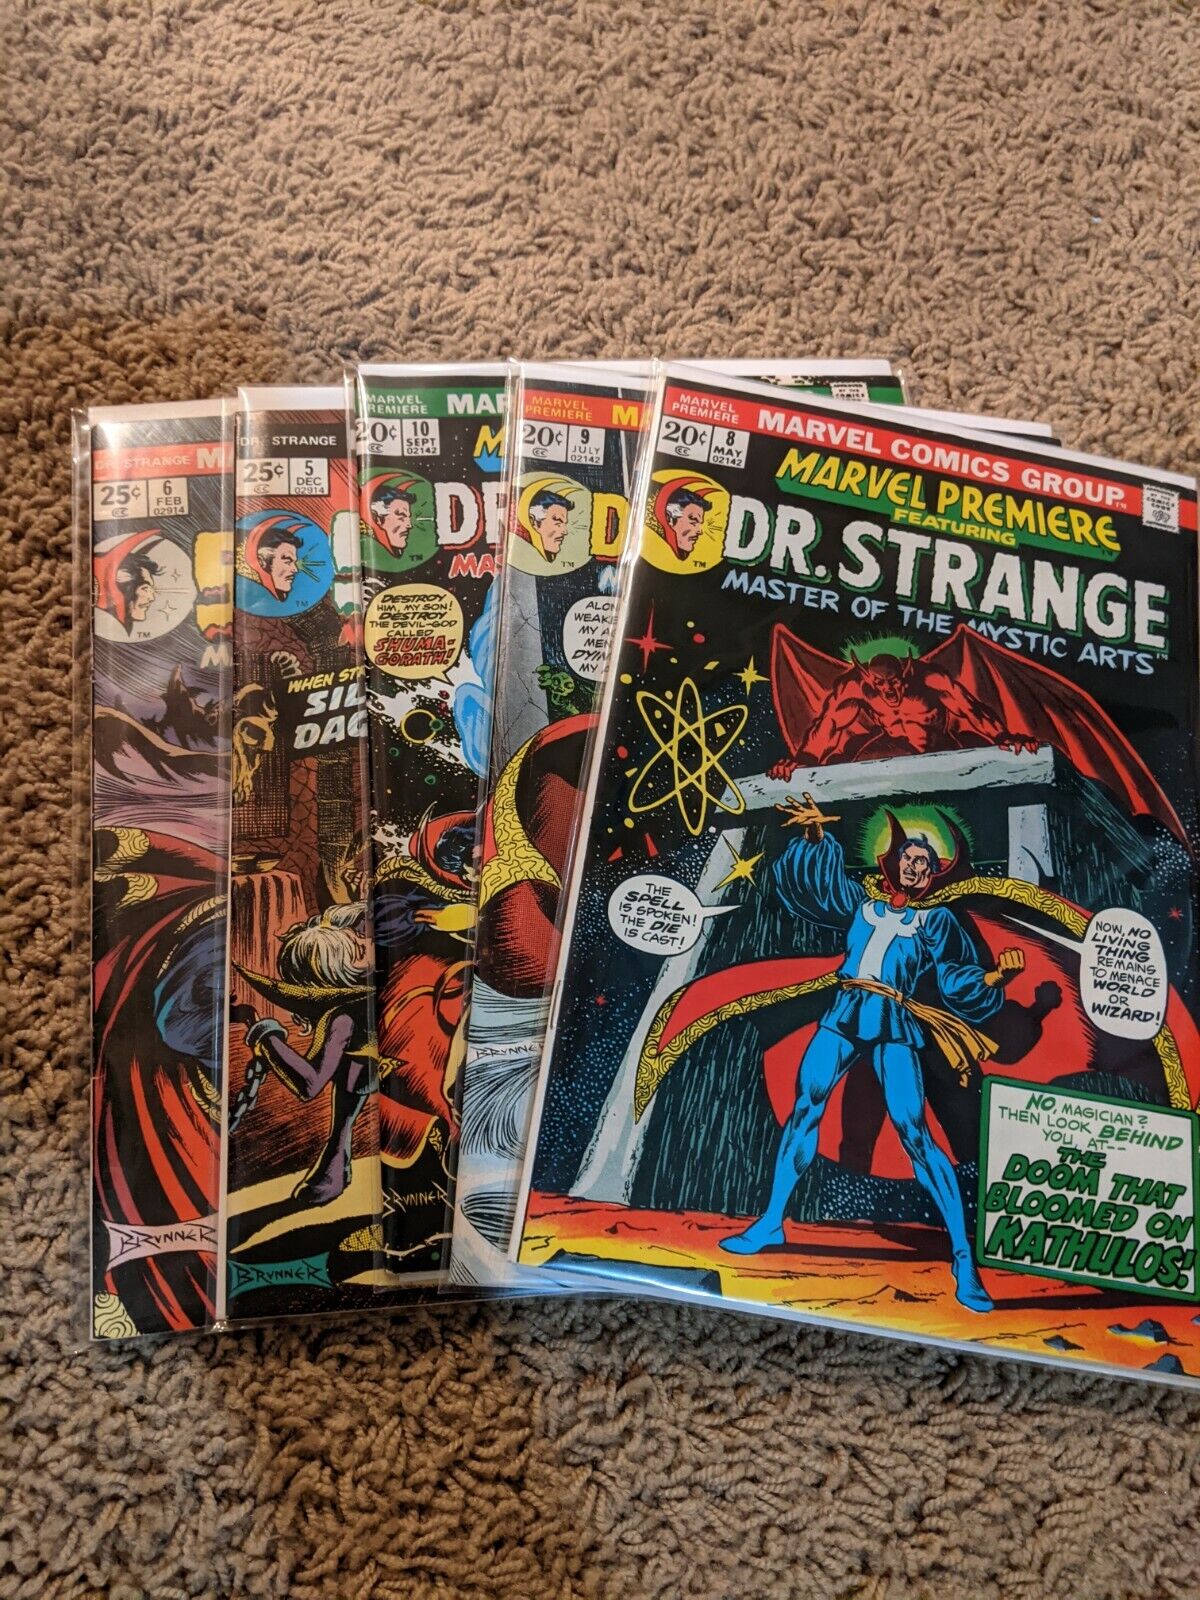 Marvel Premiere Featuring Dr. Strange #8,9,10, Dr. Strange #5,6 HIGH GRADE